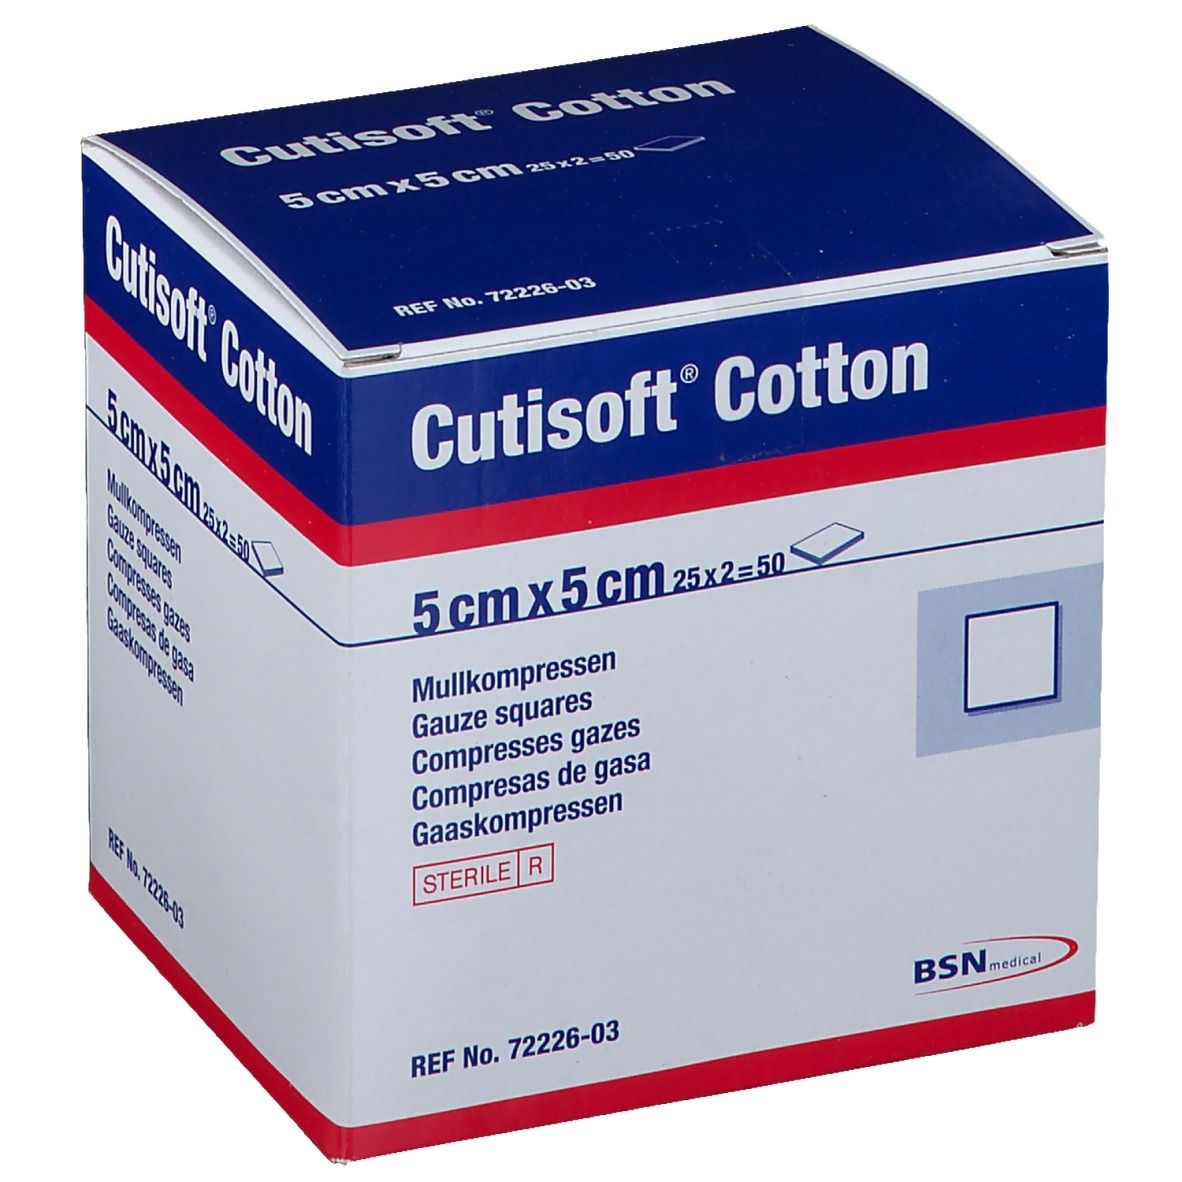 Cutisoft® Cotton steril 5 cm x 5 cm